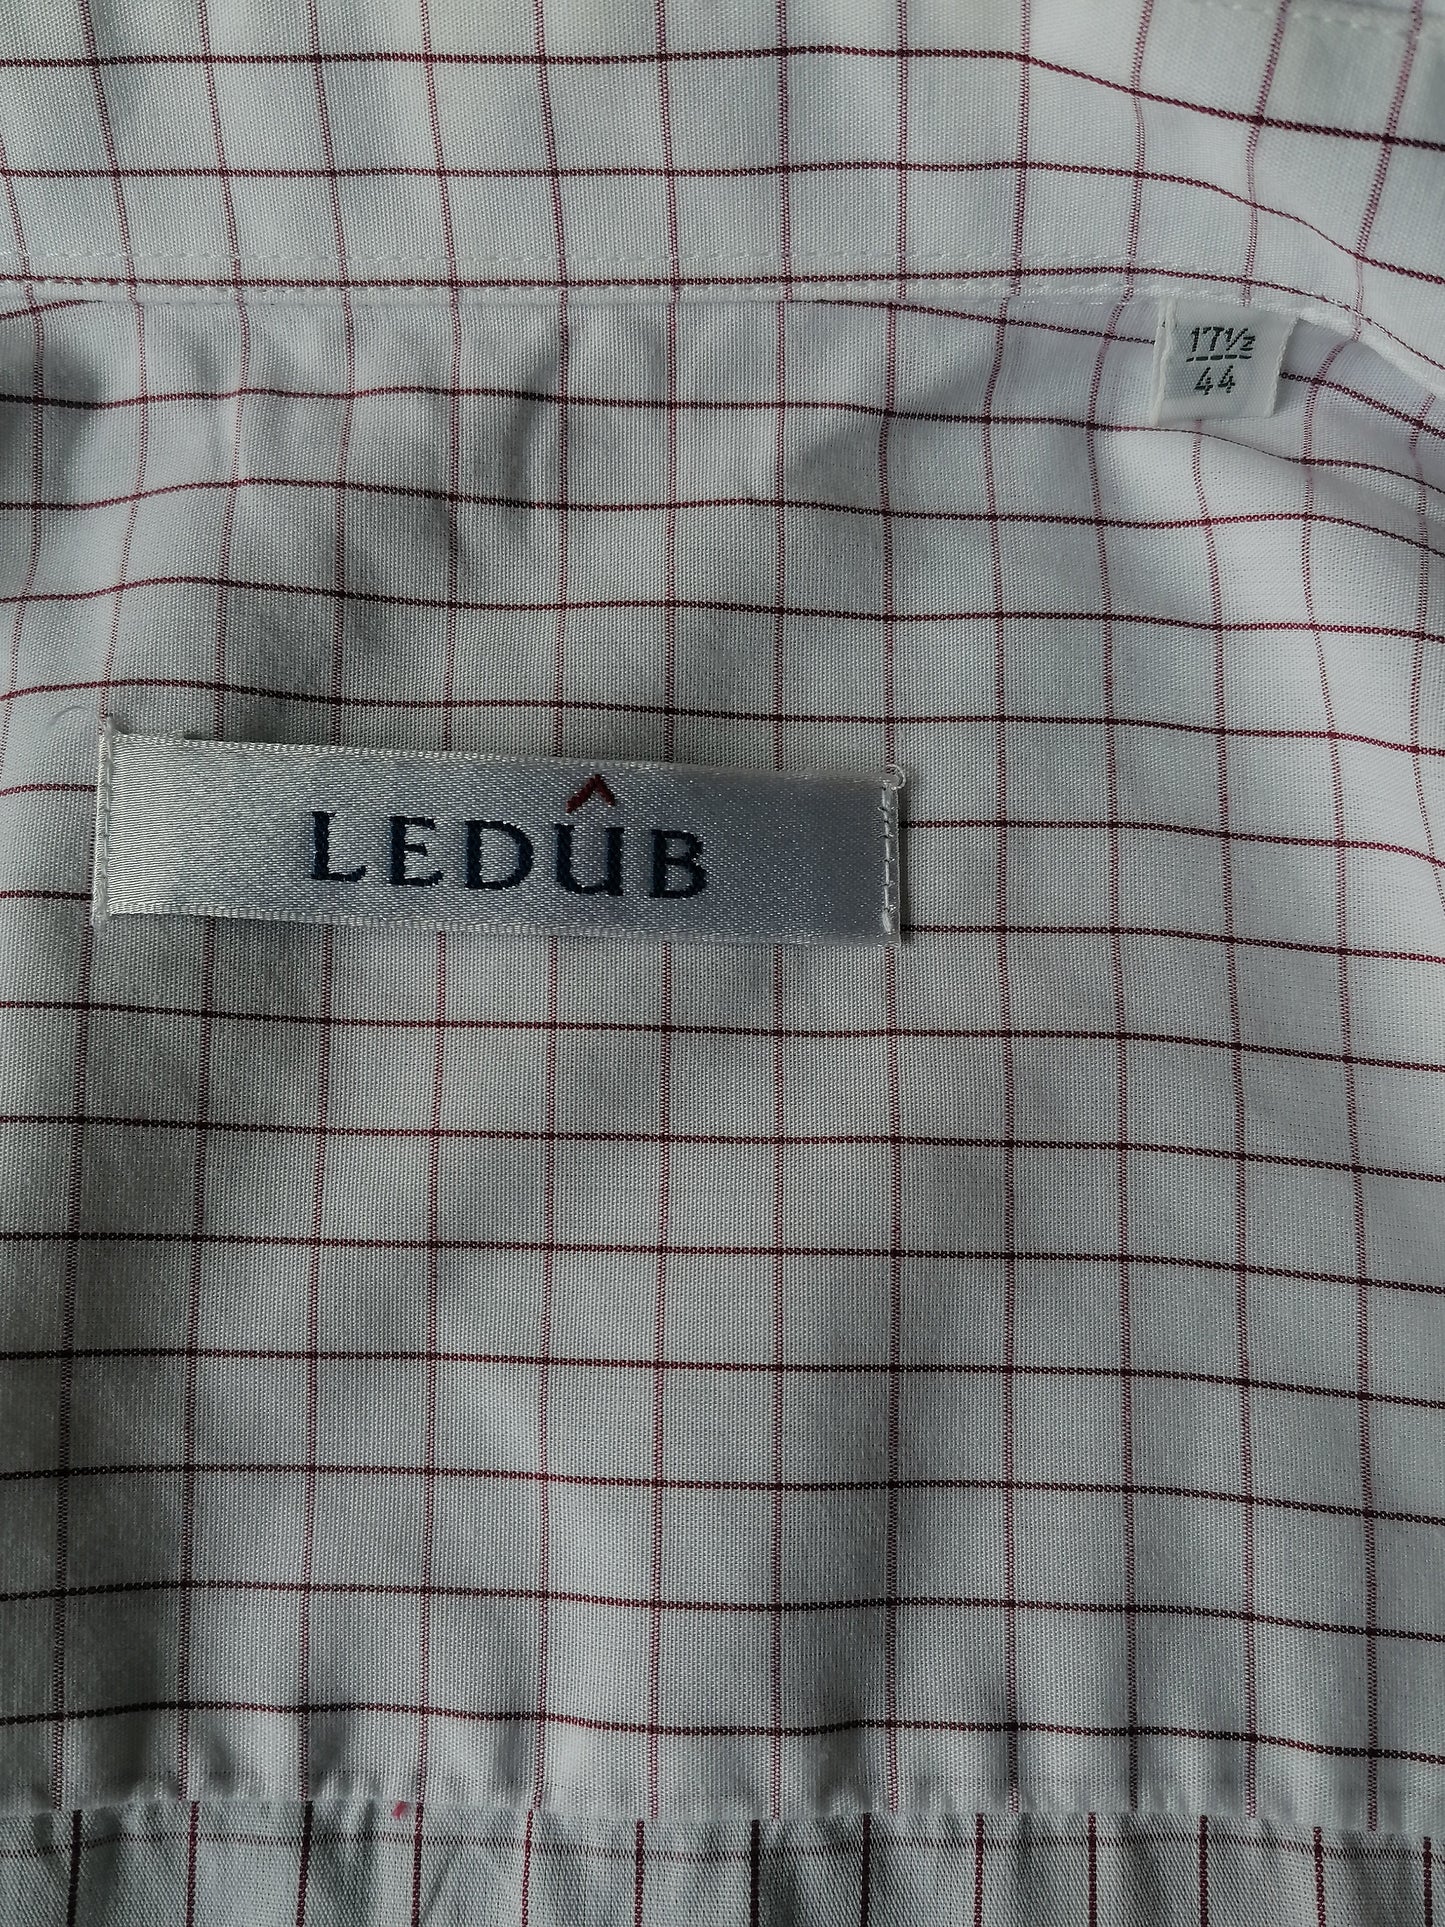 Ledub shirt. White red blocked. Size 44 / / XL.